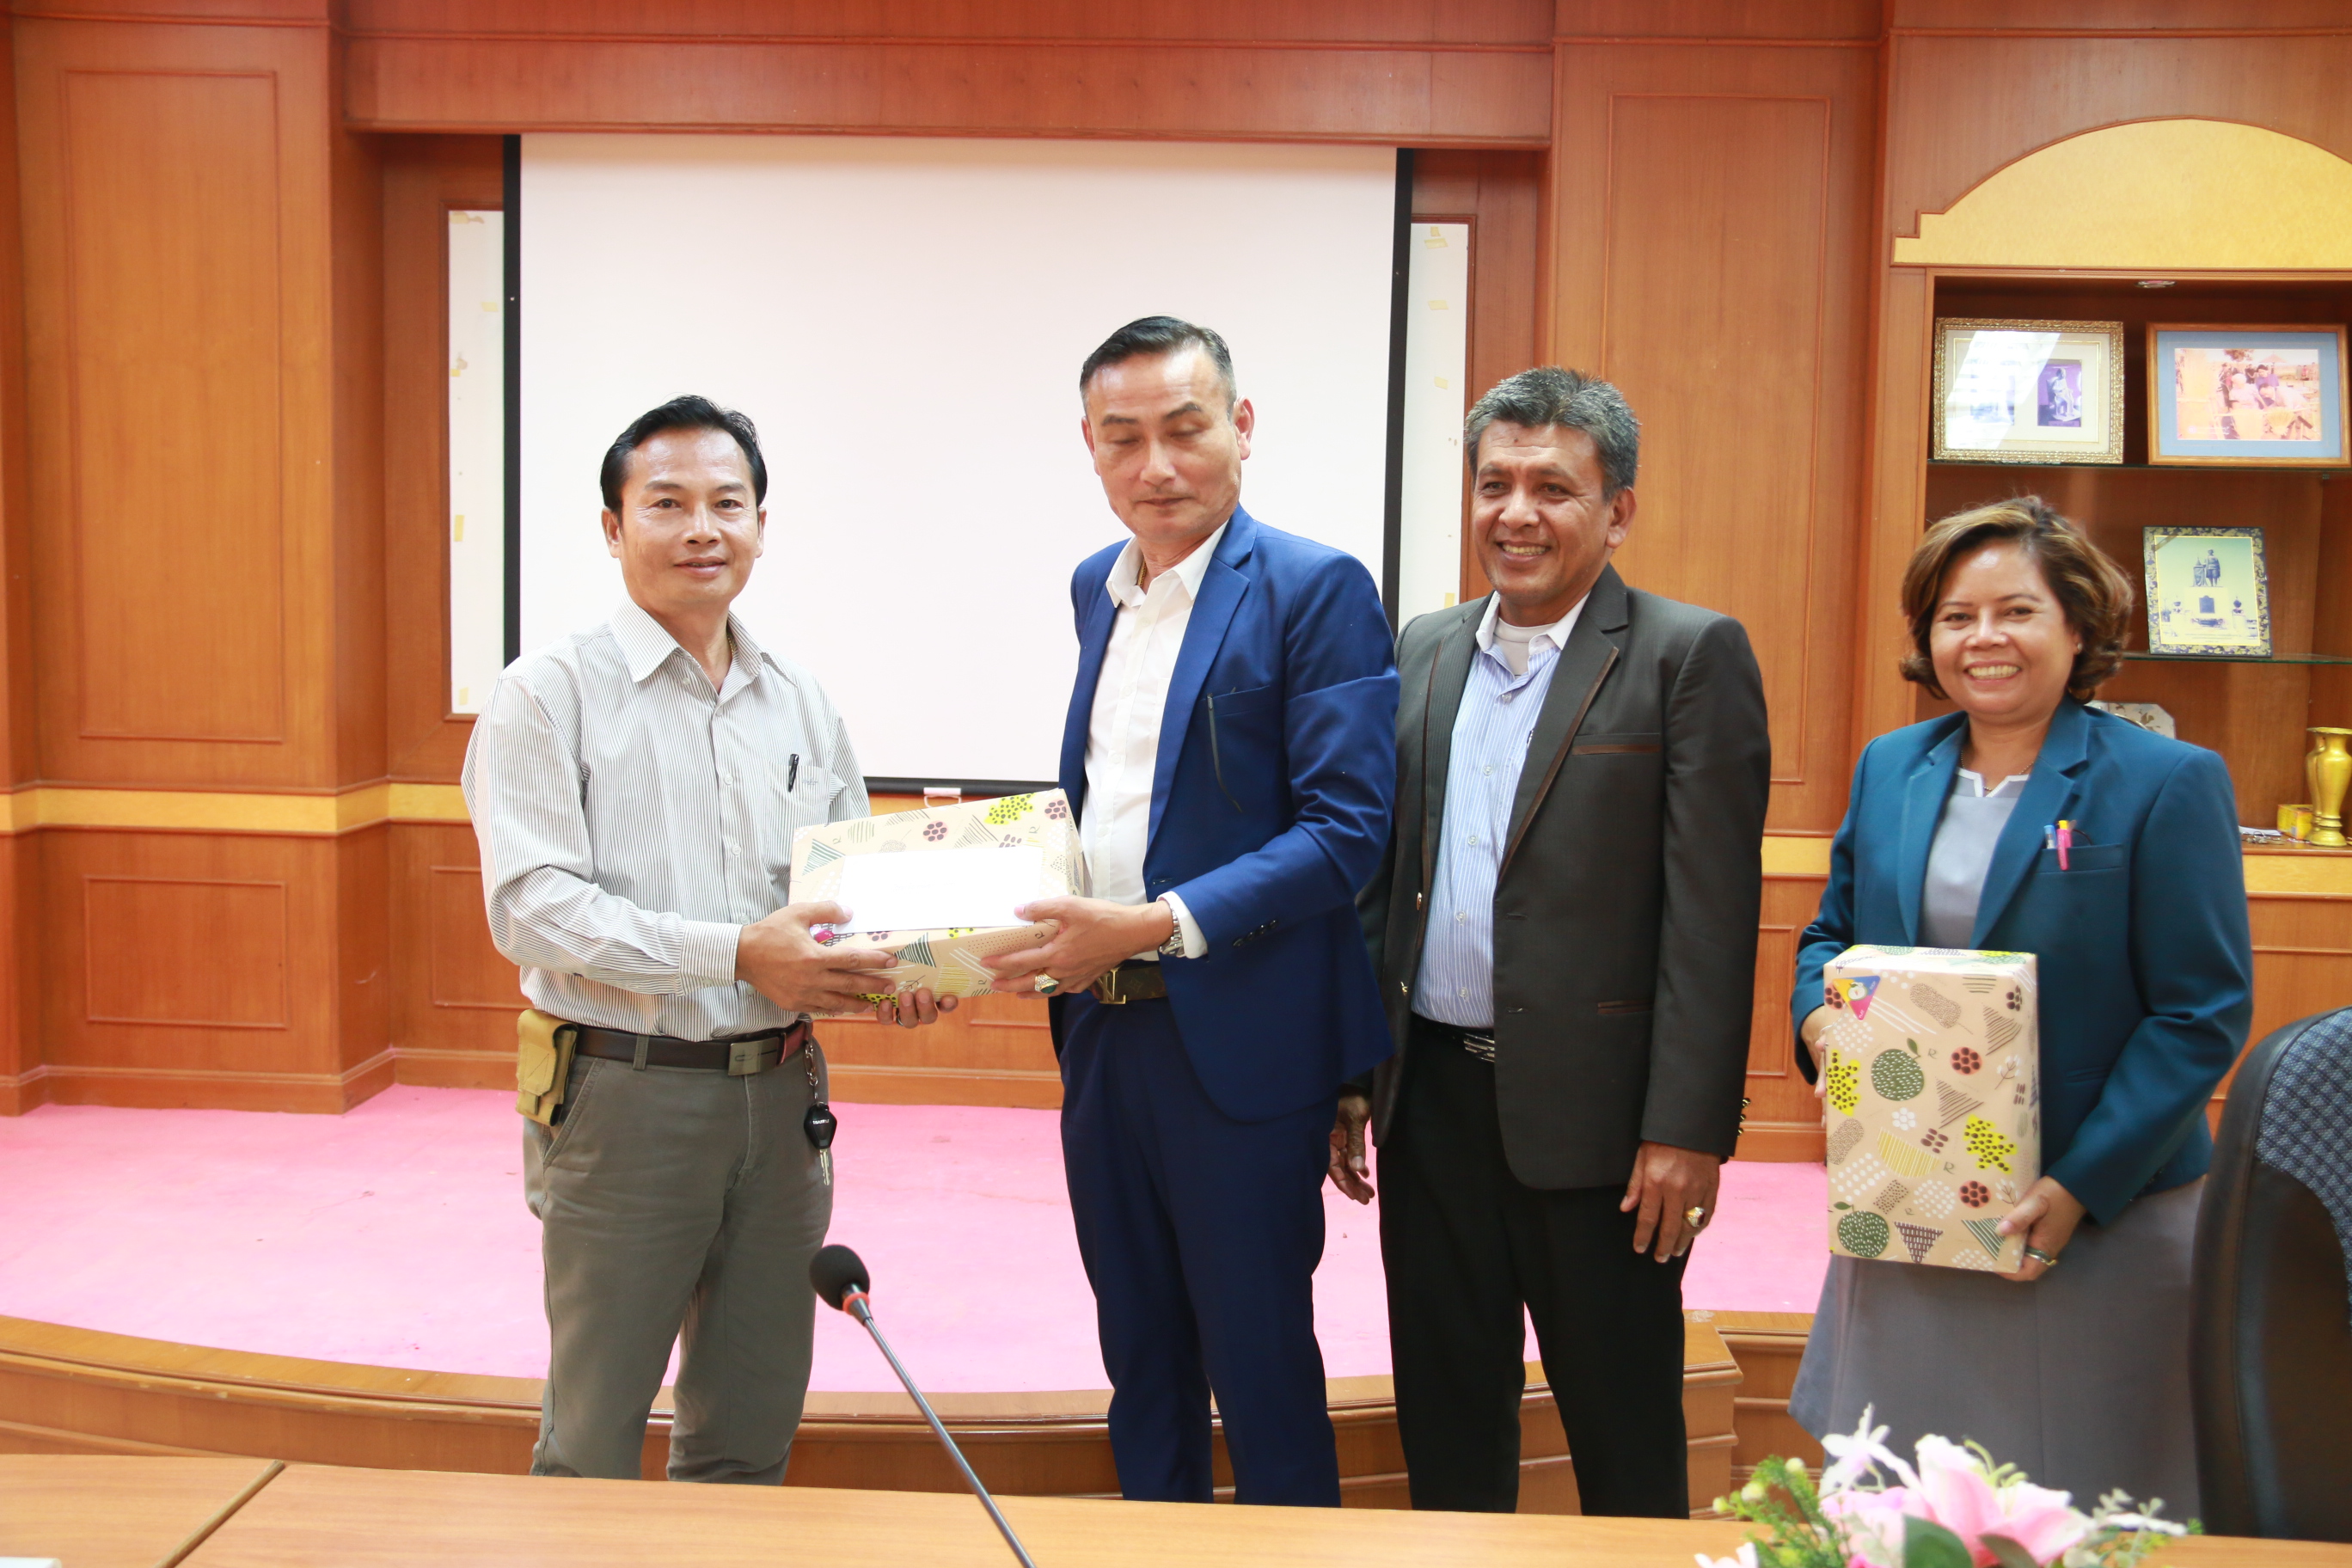 บรรยายข้าราชการและบุคลากรทางการศึกษาวิทยาลัยเกษตรและเทคโนโลยีกาญจนบุรี